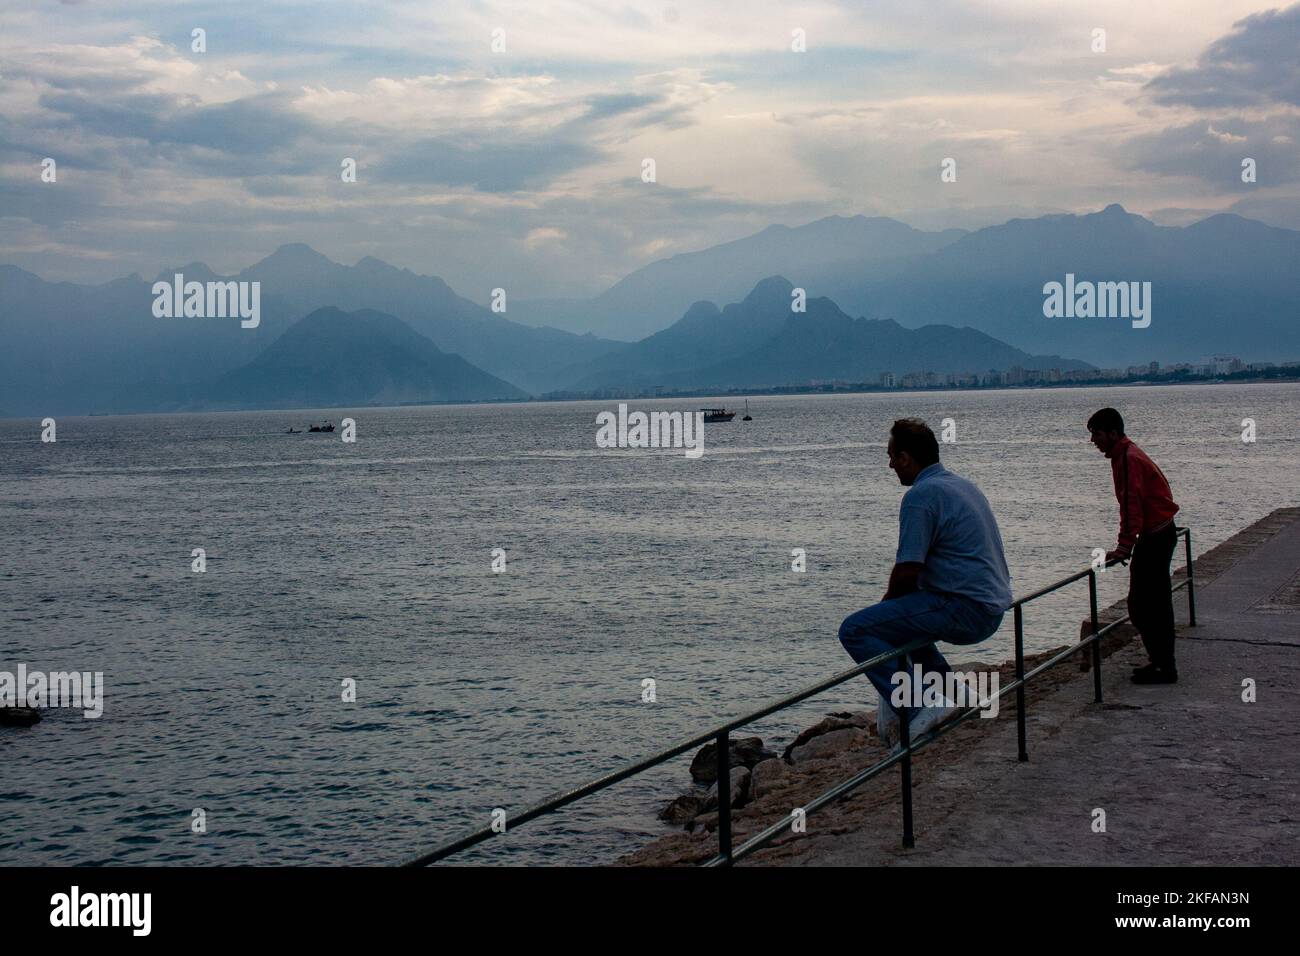 Turquie, Antalya. Kaleiçi. Ancien port de pêche. Montagnes Taurus, Golfe d'Antalya. Péninsule anatolienne, Anatolie, Turquie Banque D'Images